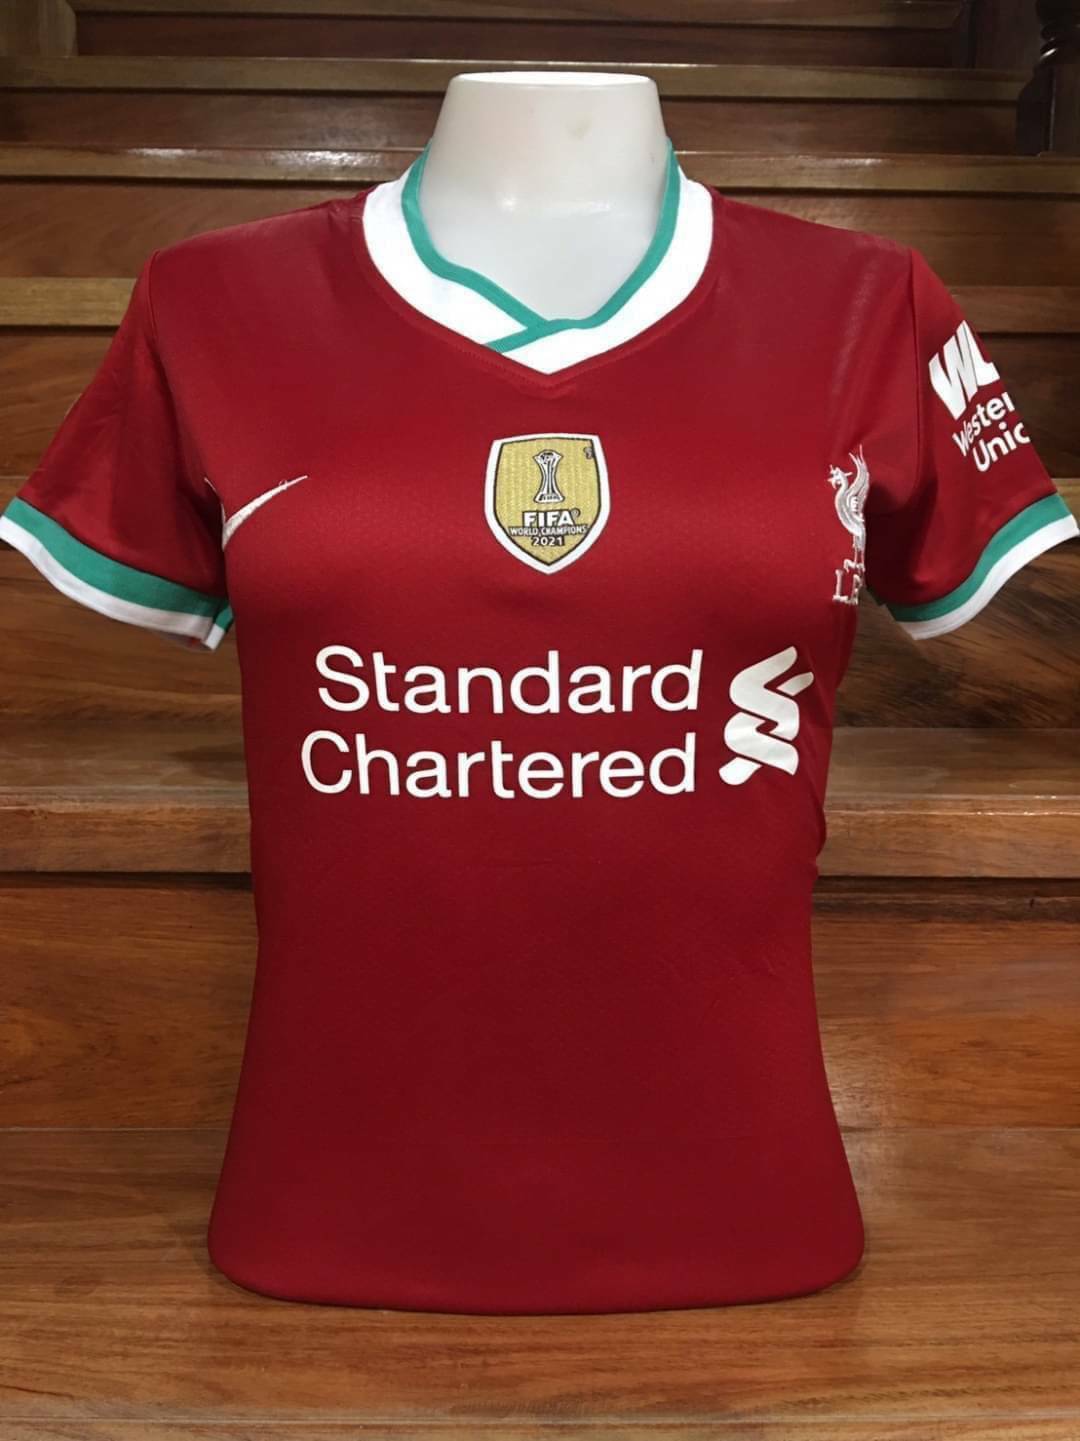 💥⚽เสื้อกีฬาผู้หญิงทีมลิเวอร์พูล/Liverpool FC ตัวใหม่ล่าสุดฤดูกาล 2020